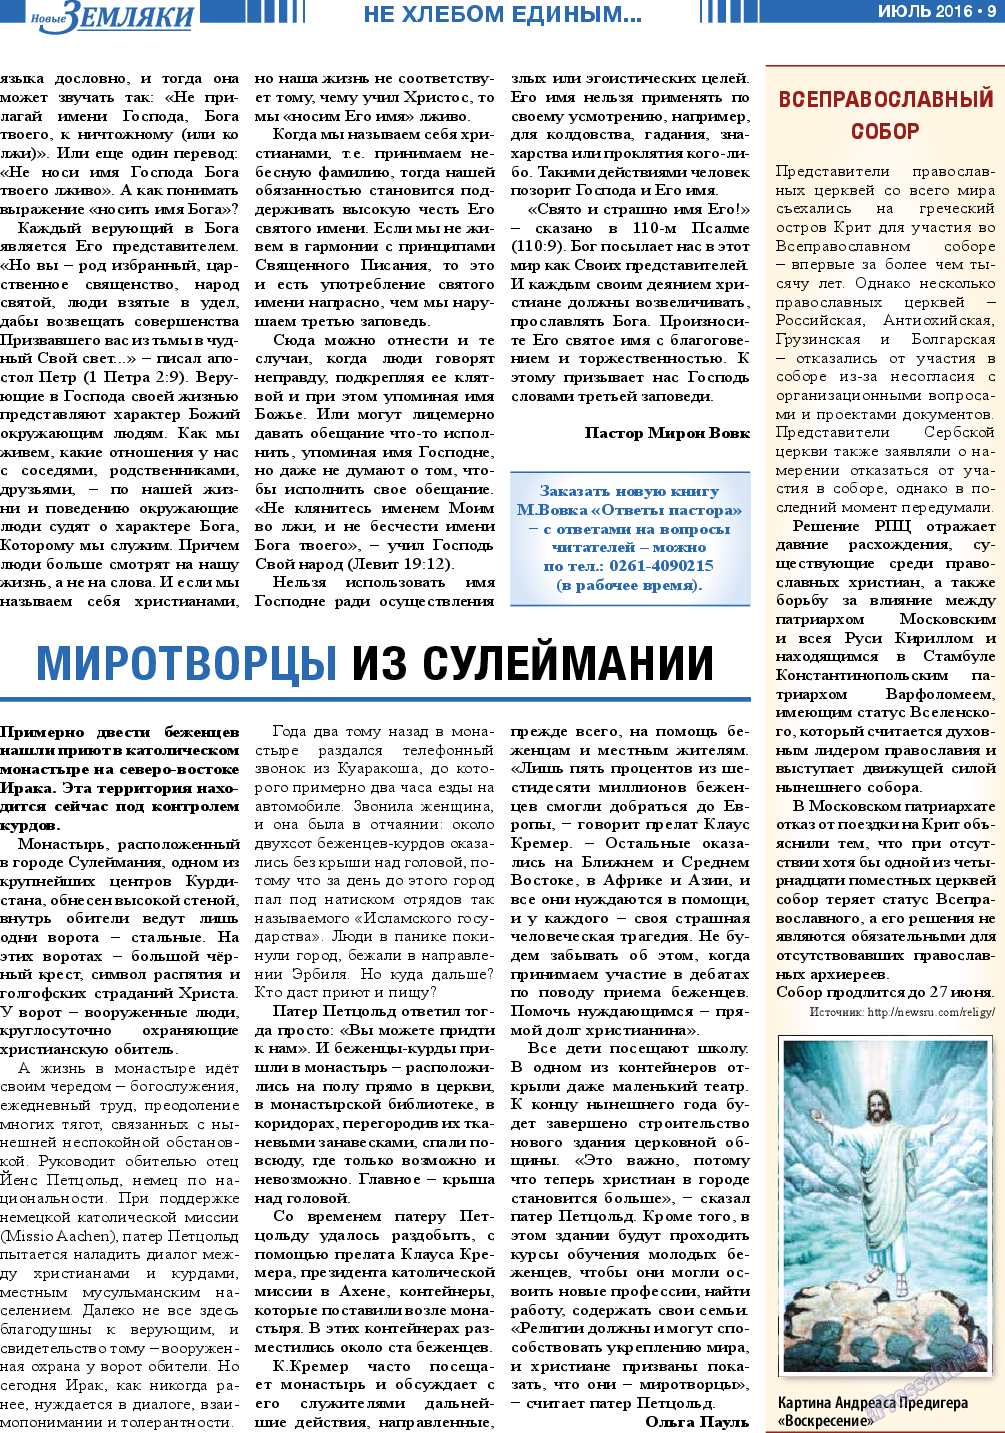 Новые Земляки, газета. 2016 №7 стр.9